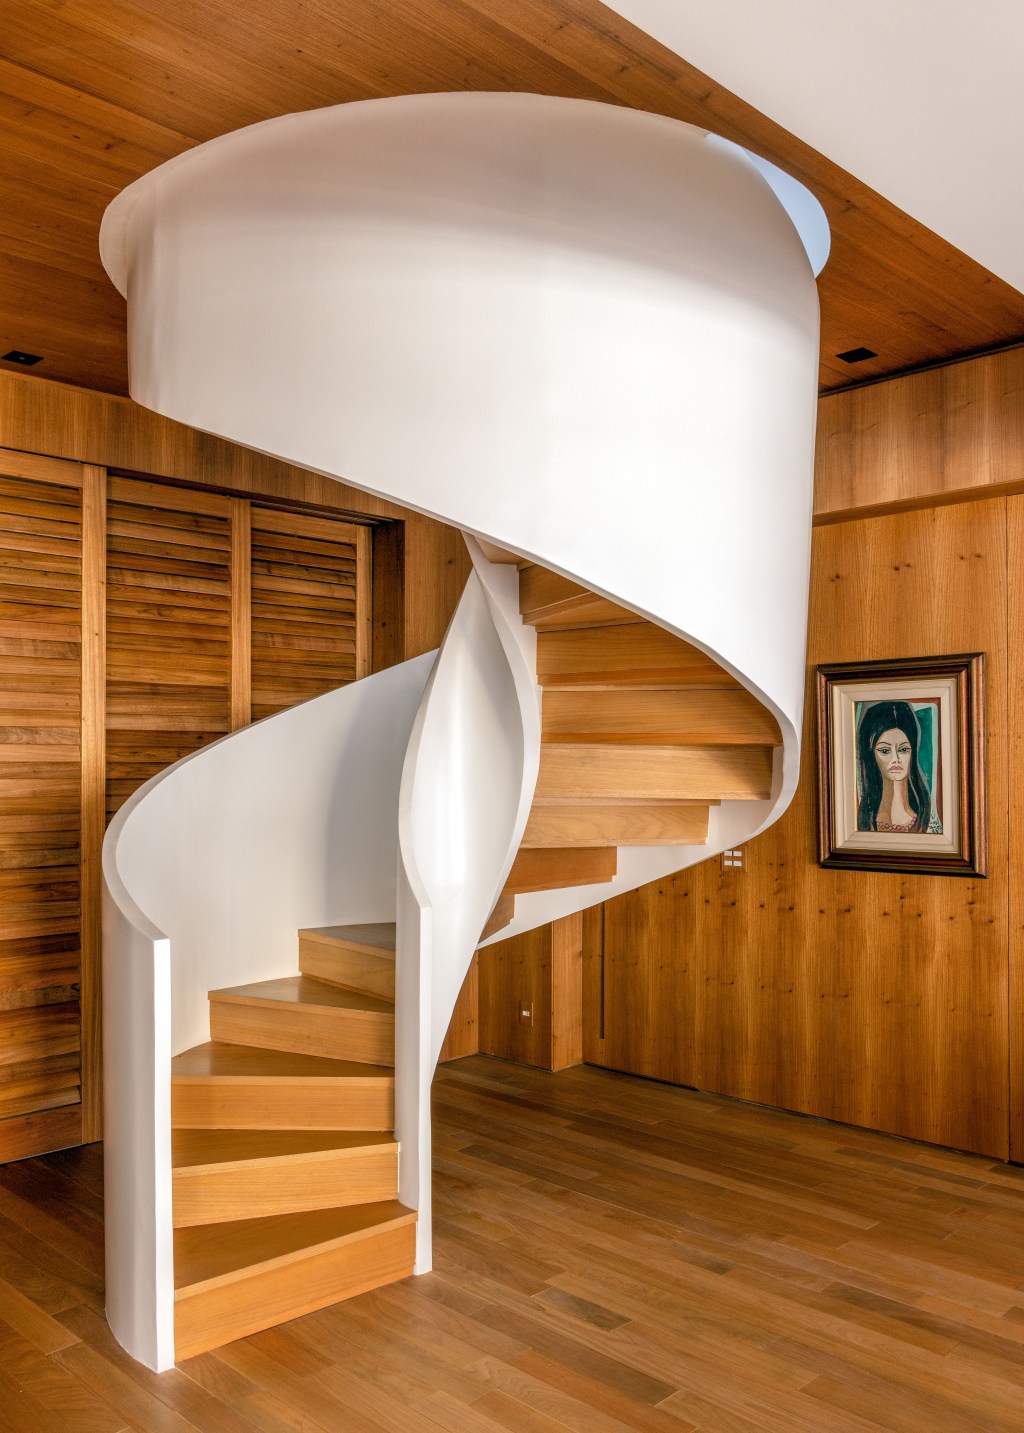 Apê 400 m² cara de casa design brasileiro arte Escala Arquitetura Rio de Janeiro decoracao madeira escada helicoidal quadro